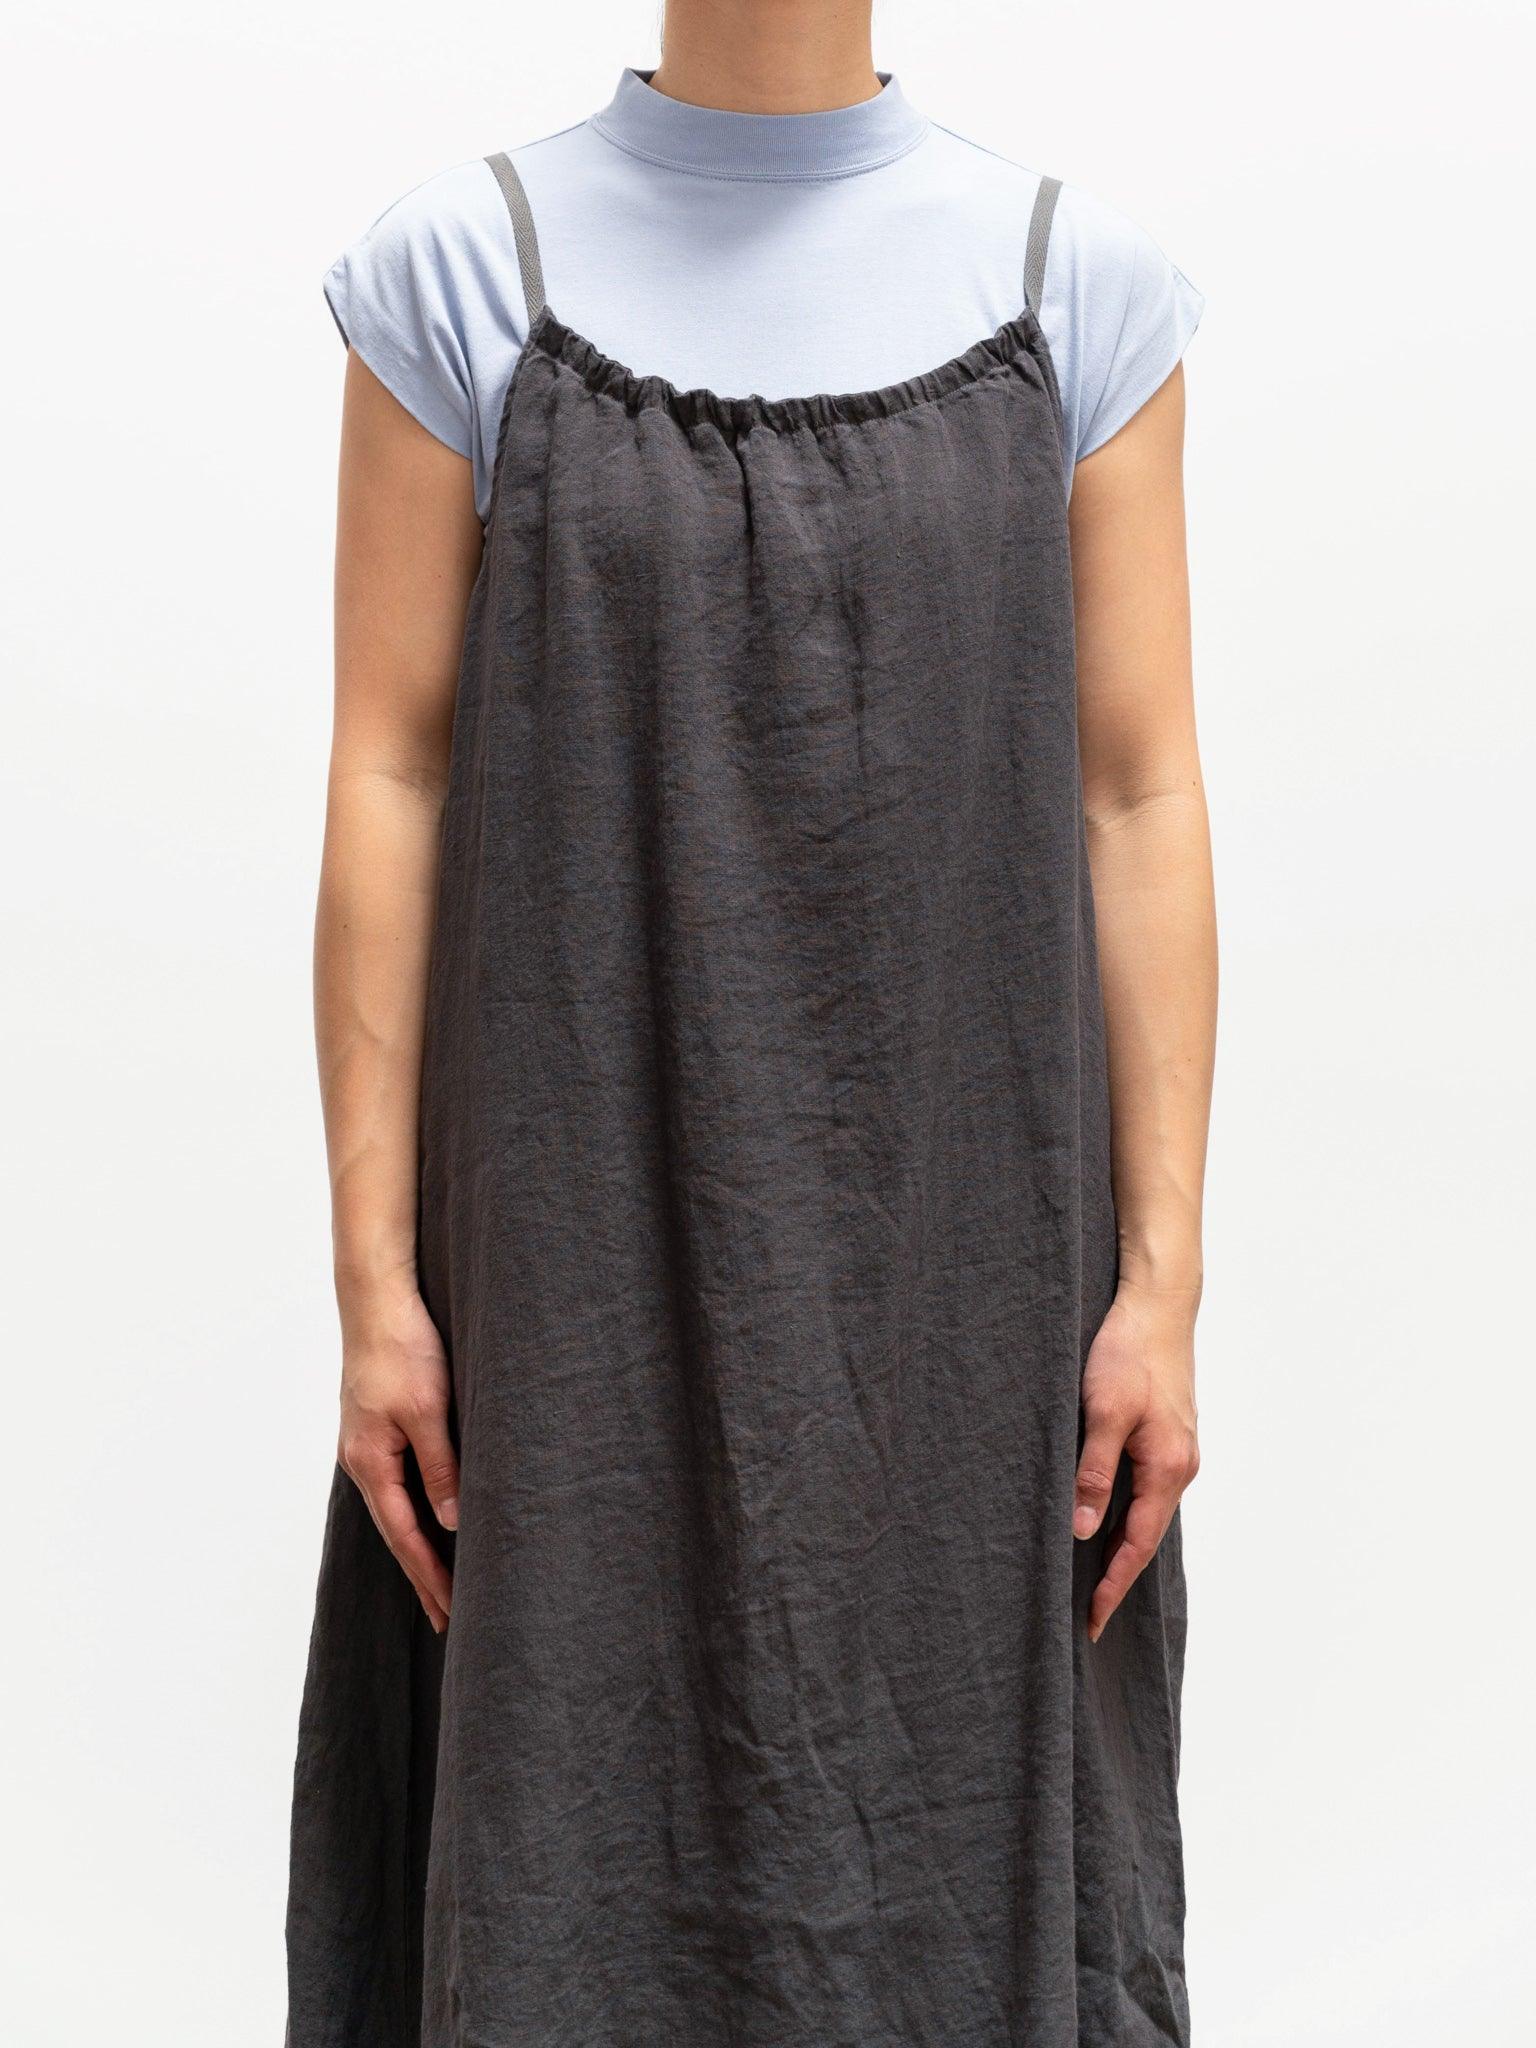 Namu Shop - Maillot Linen Camisole Dress - Smoke Gray